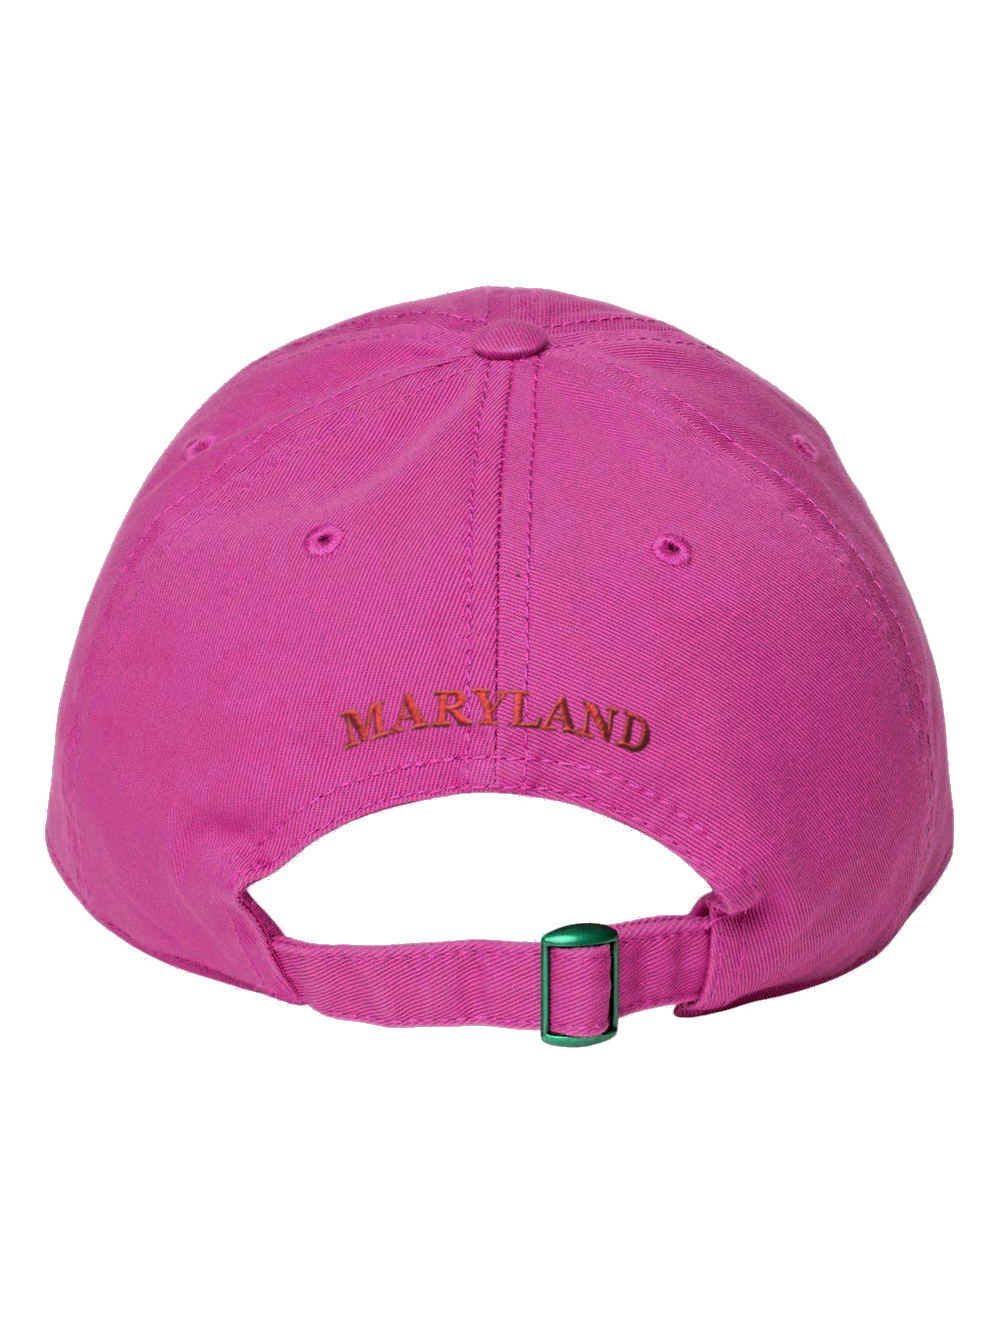 Maryland Crab Embroidered Baseball Cap (Hot Pink)